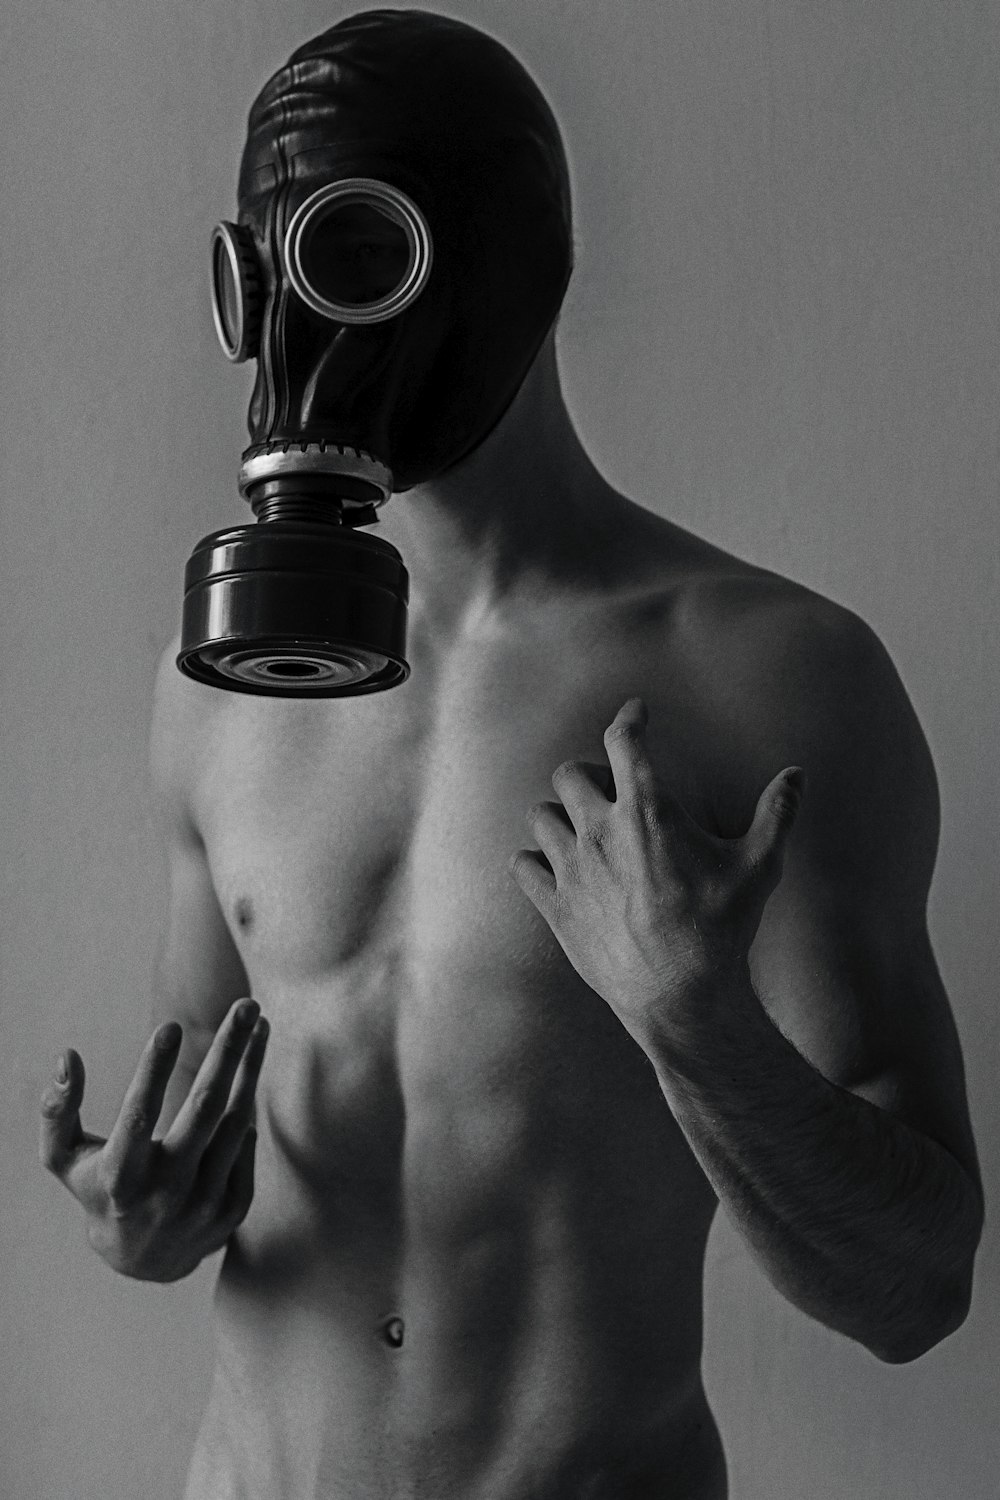 a shirtless man wearing a gas mask